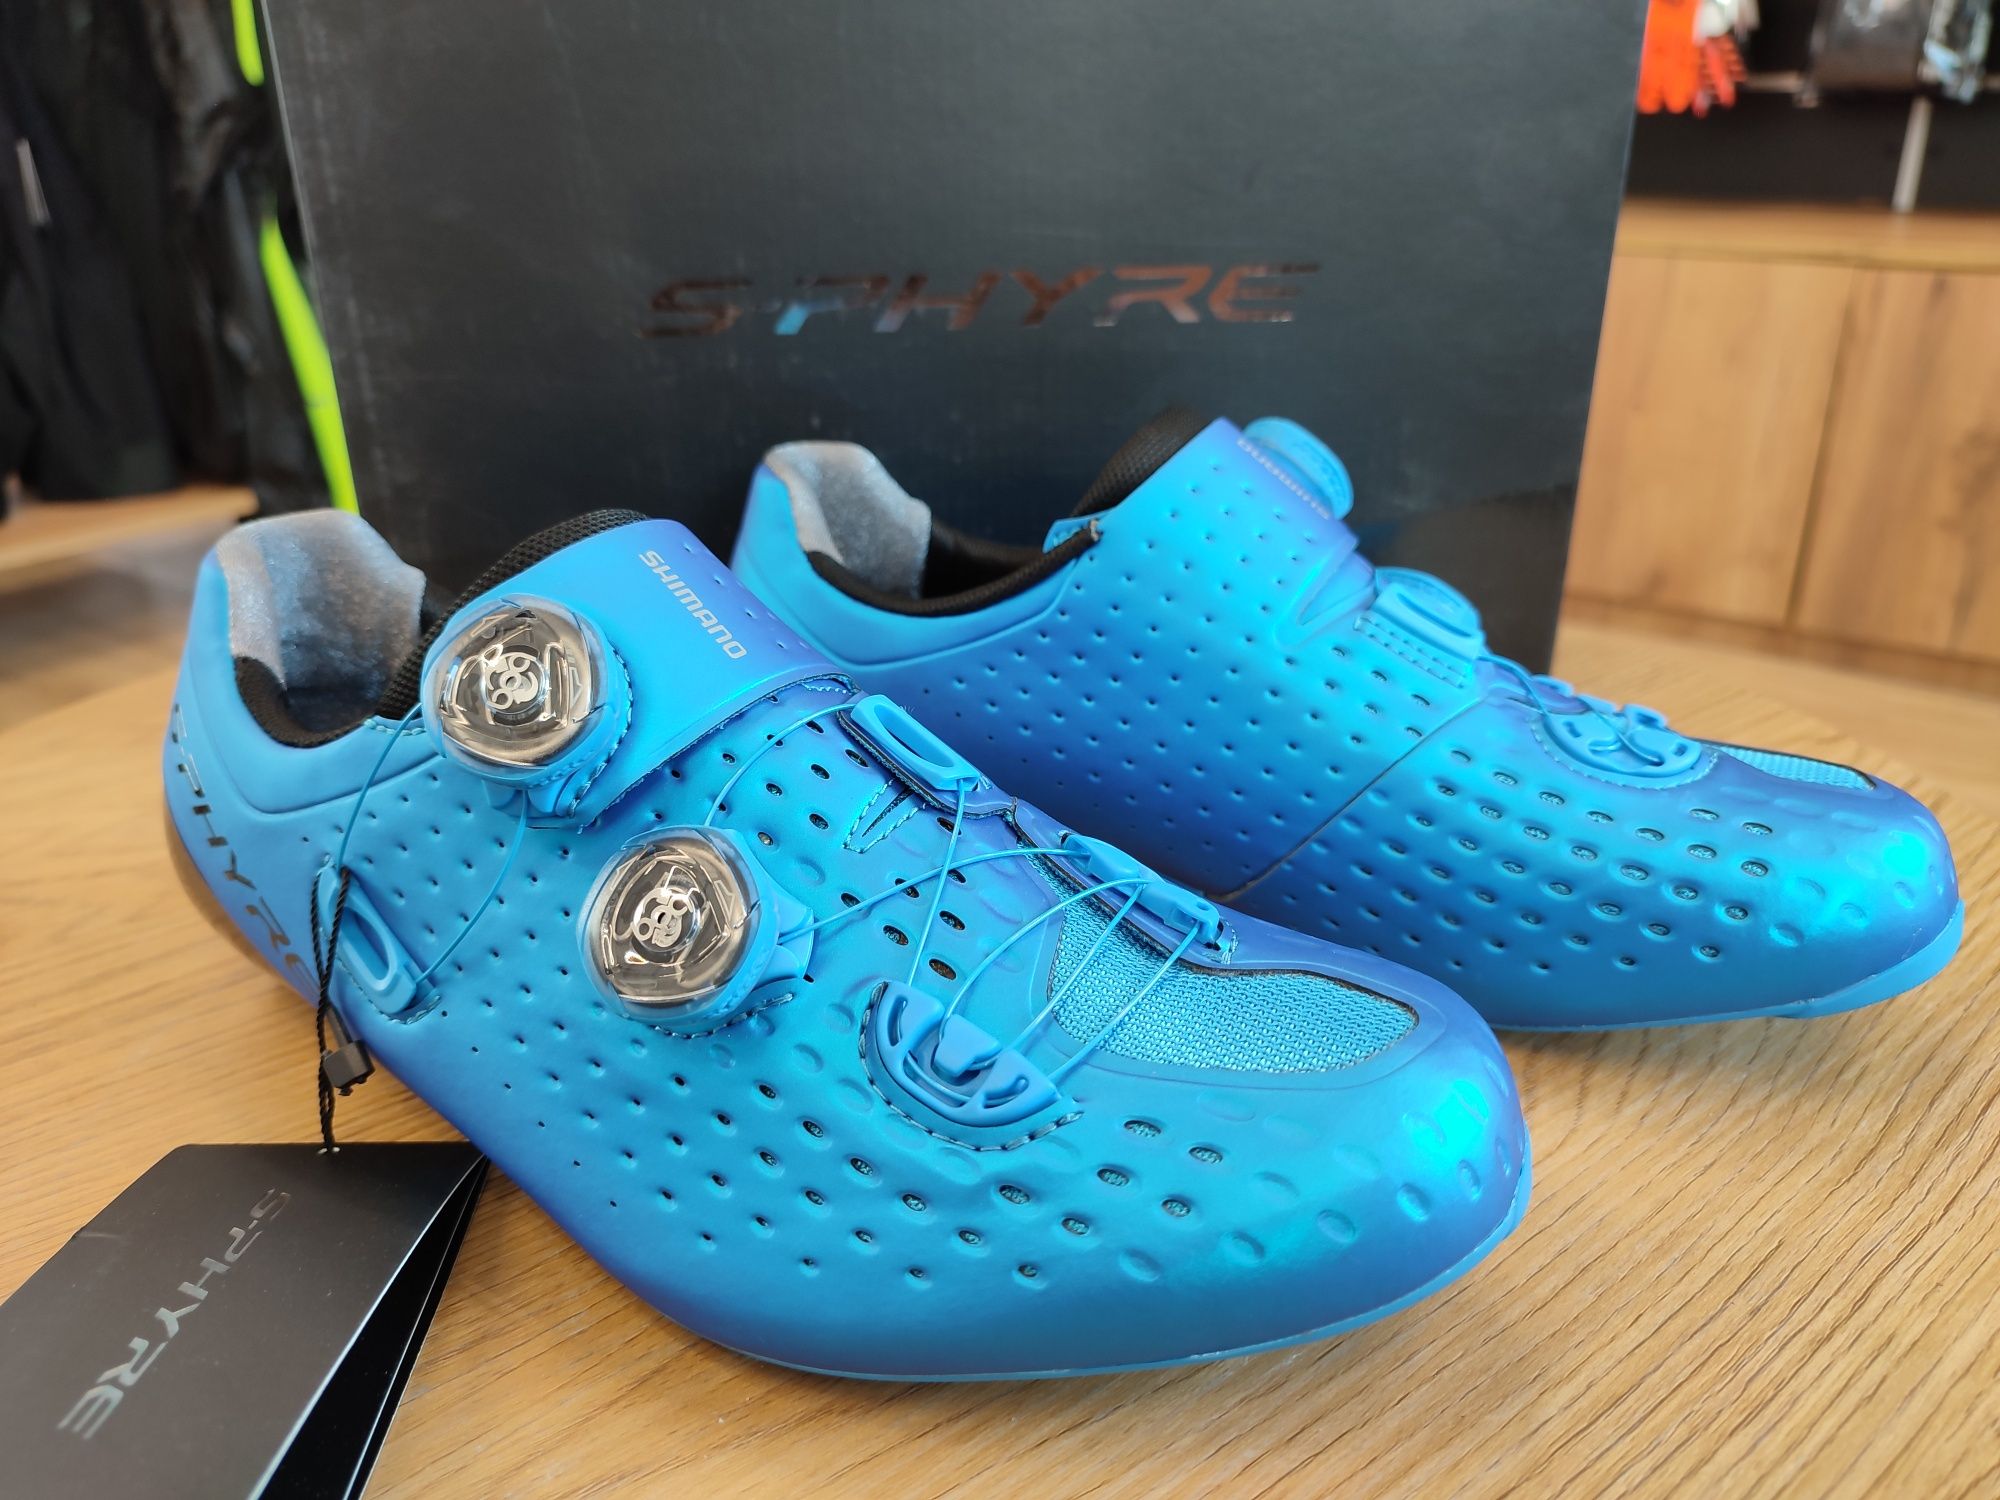 Nowe buty szosowe Shimano SH-RC900, szosa, triathlon, niebieskie